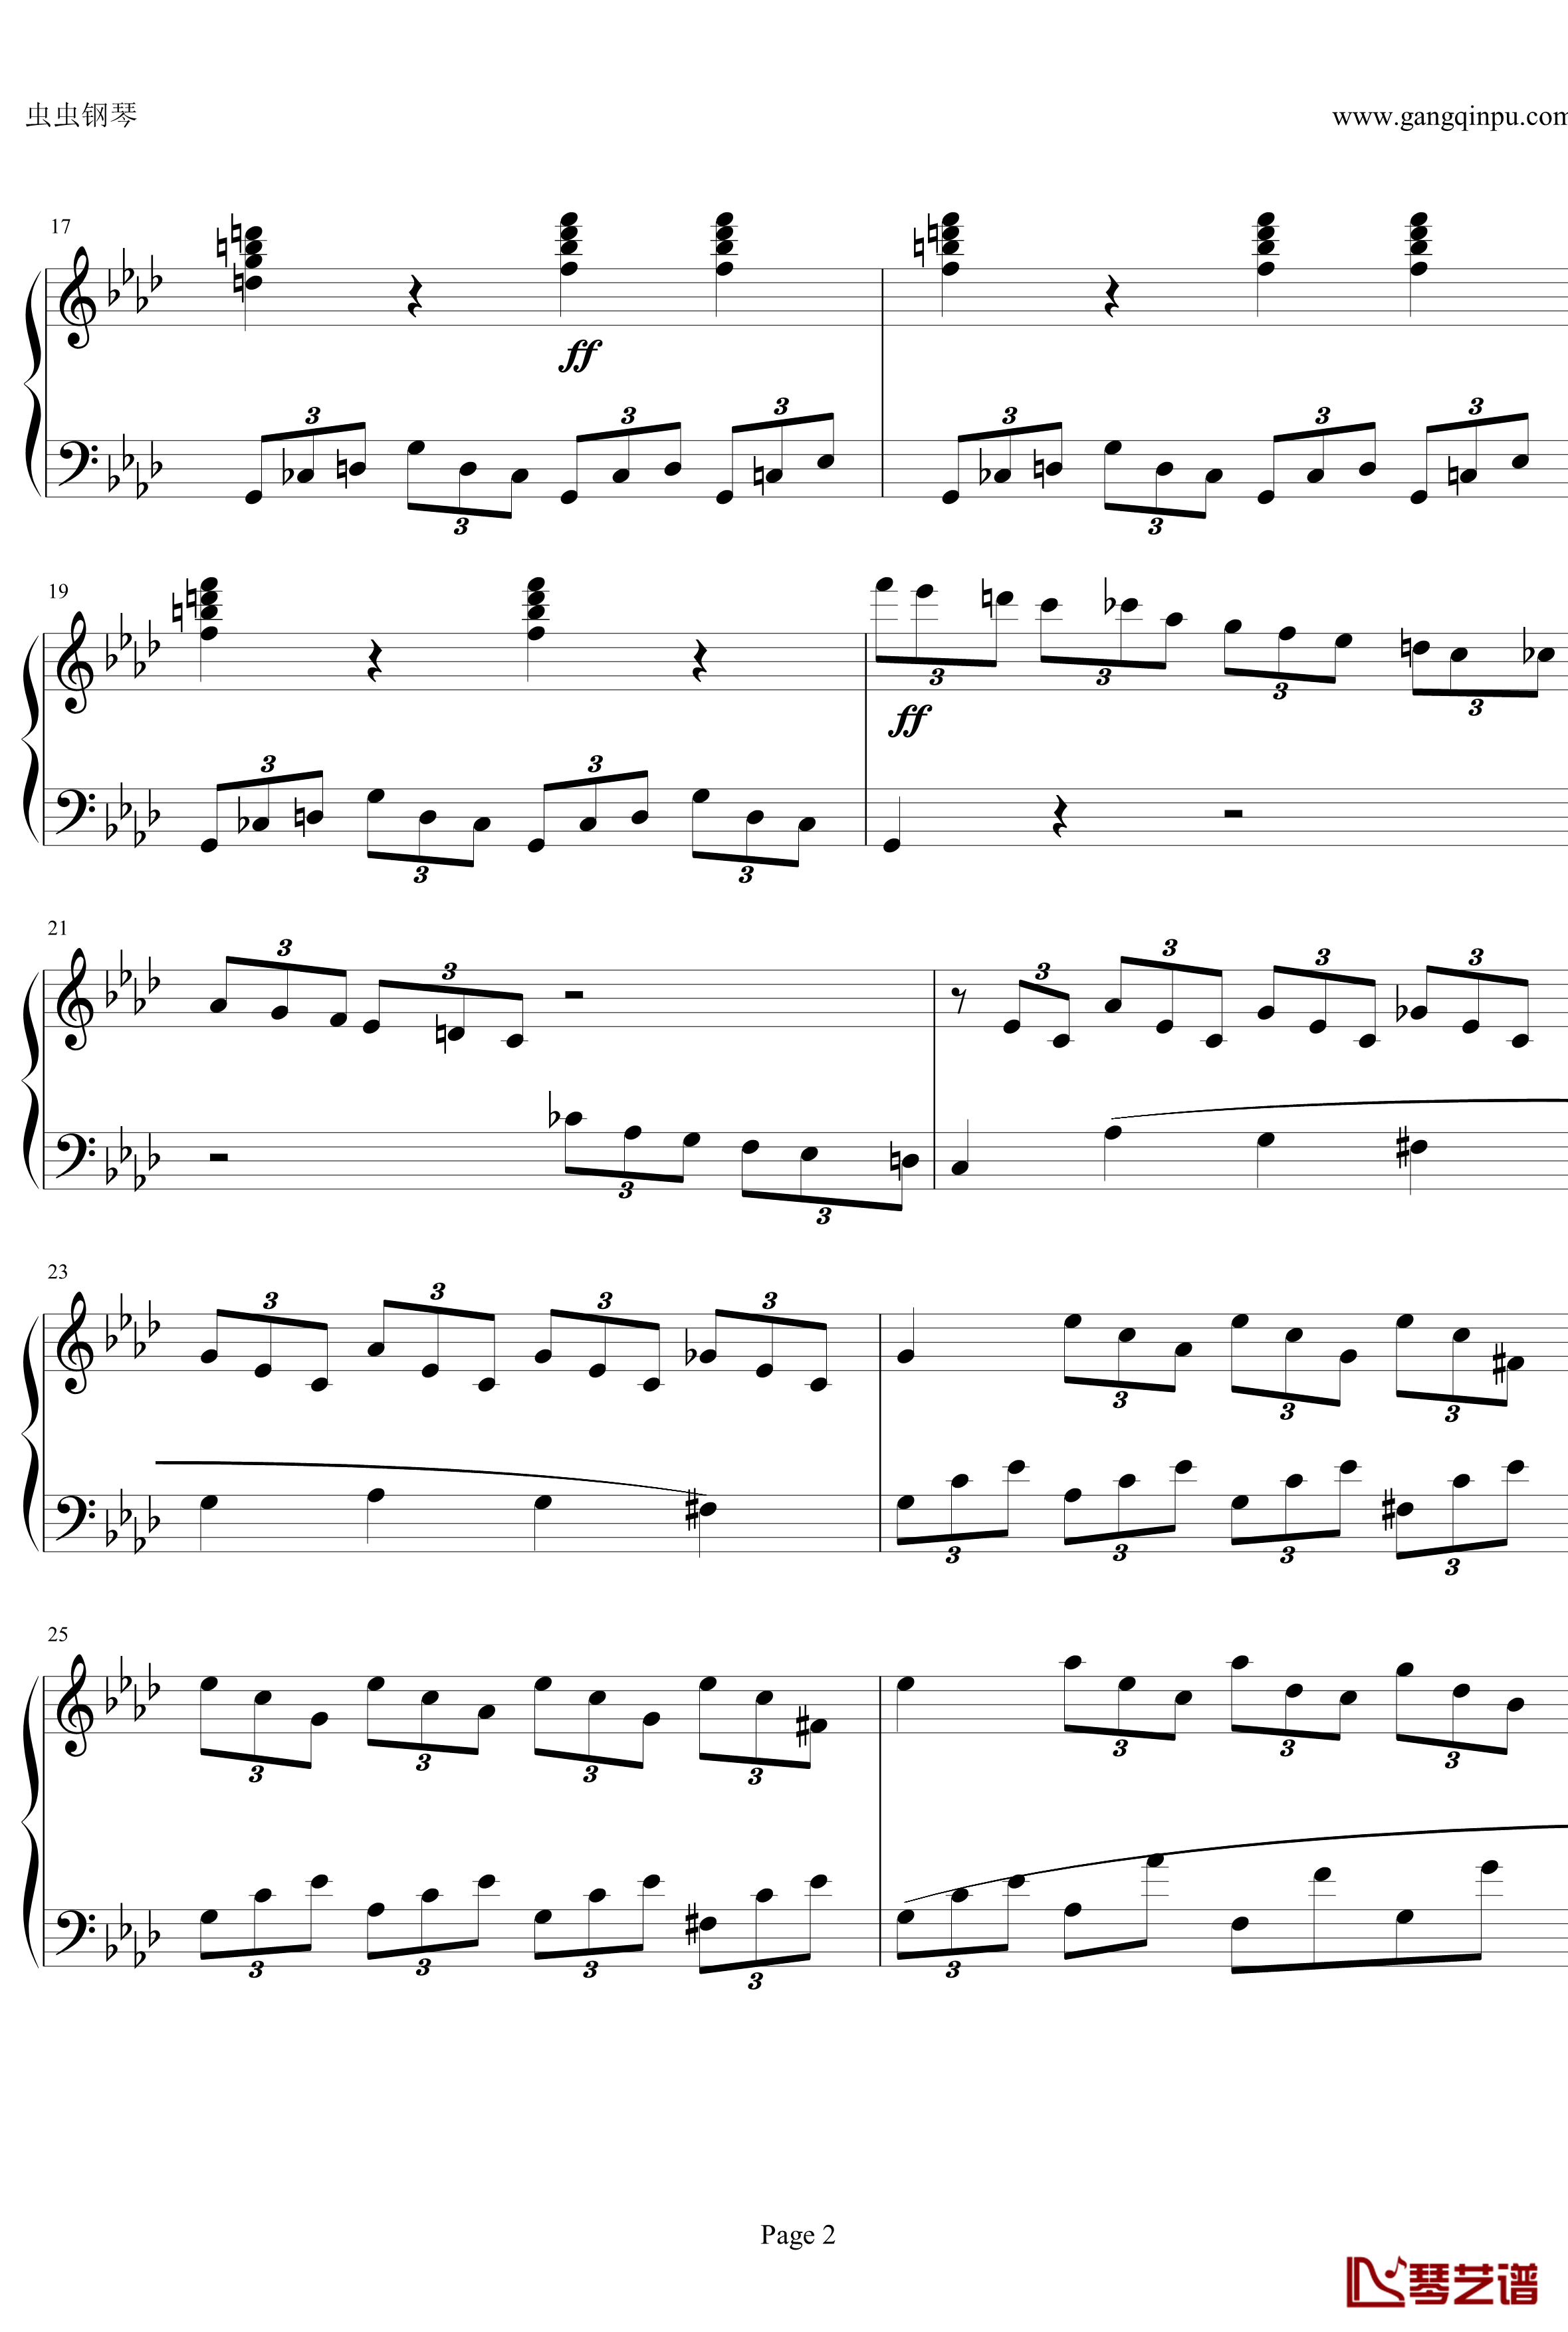 贝多芬第一钢琴奏鸣曲钢琴谱-作品2，第一号-贝多芬-beethoven2